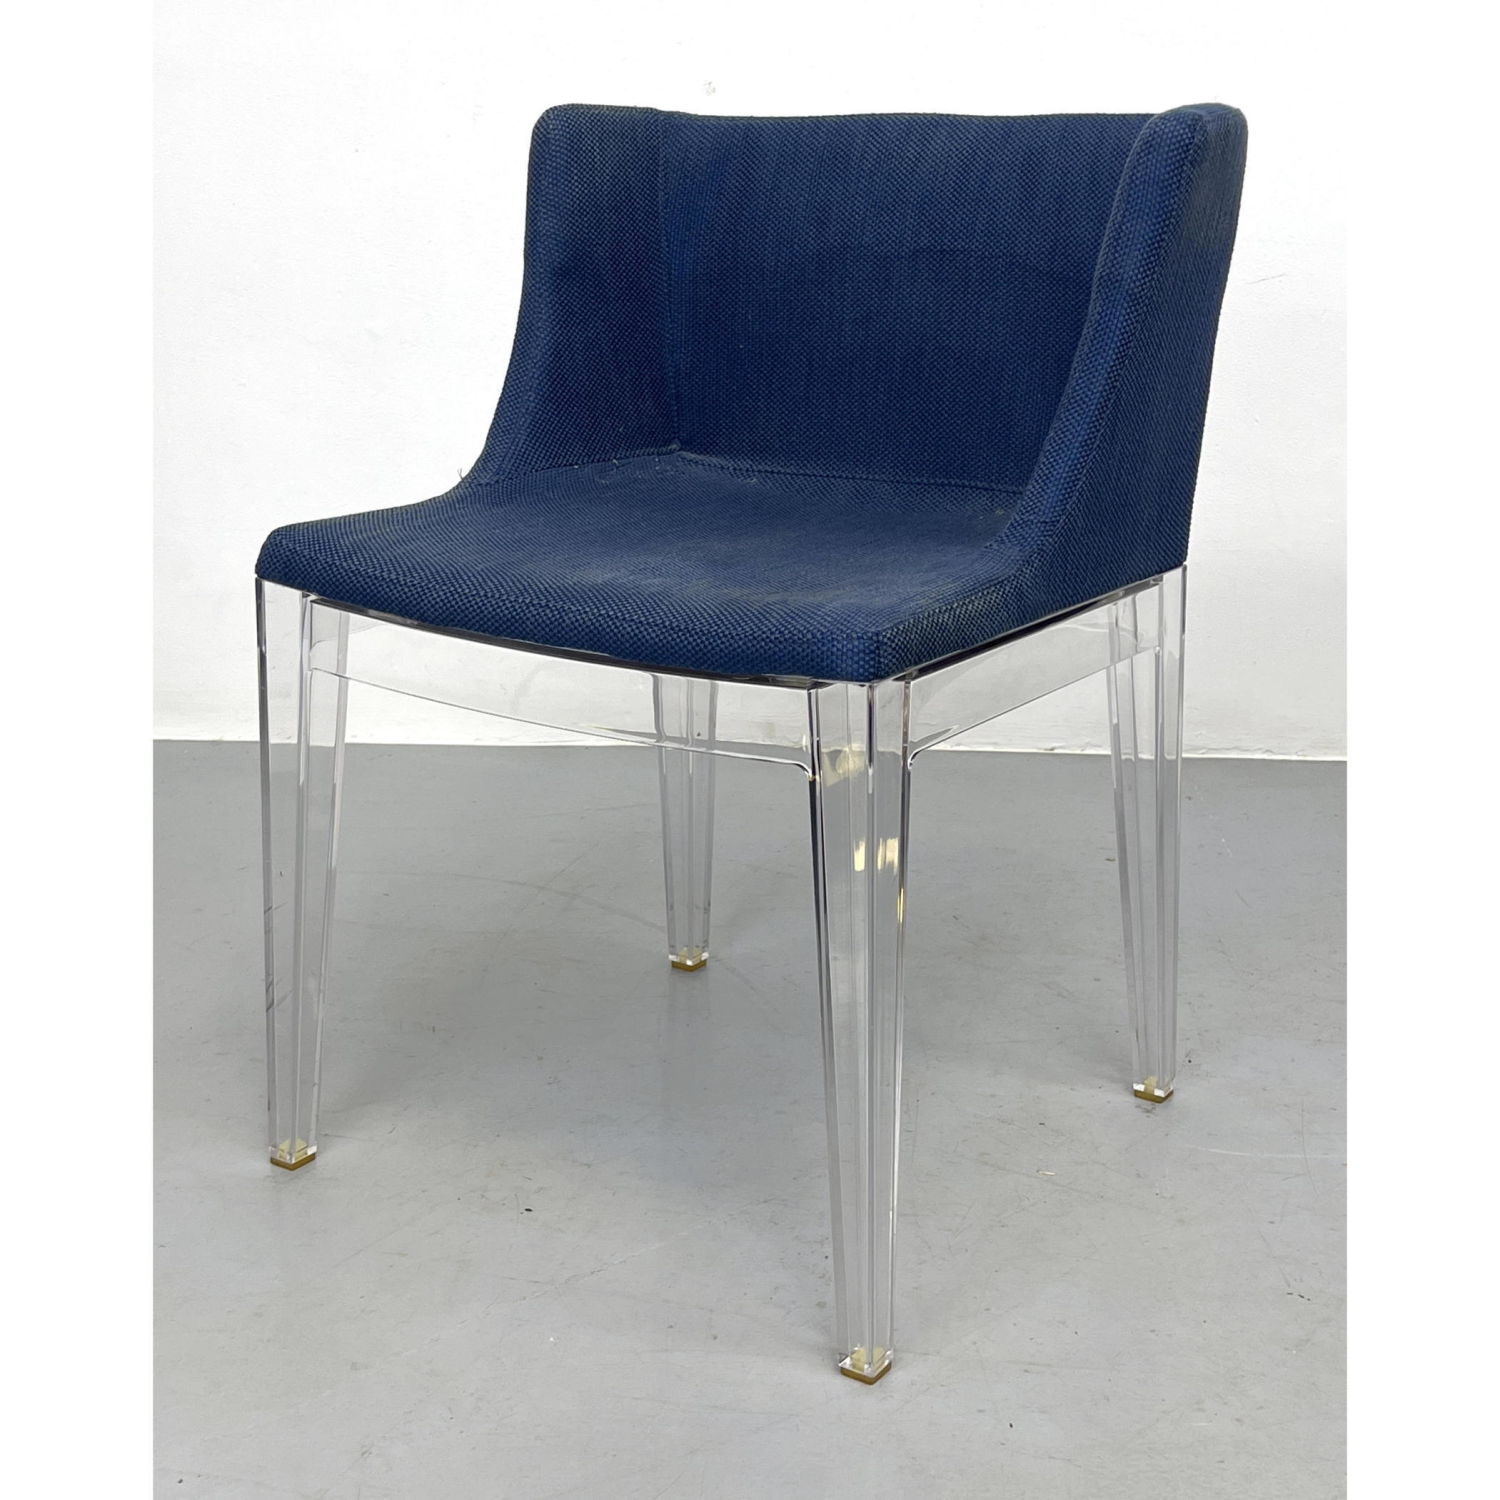 STARCK Mademoiselle Chair for Kartell 2fe54f